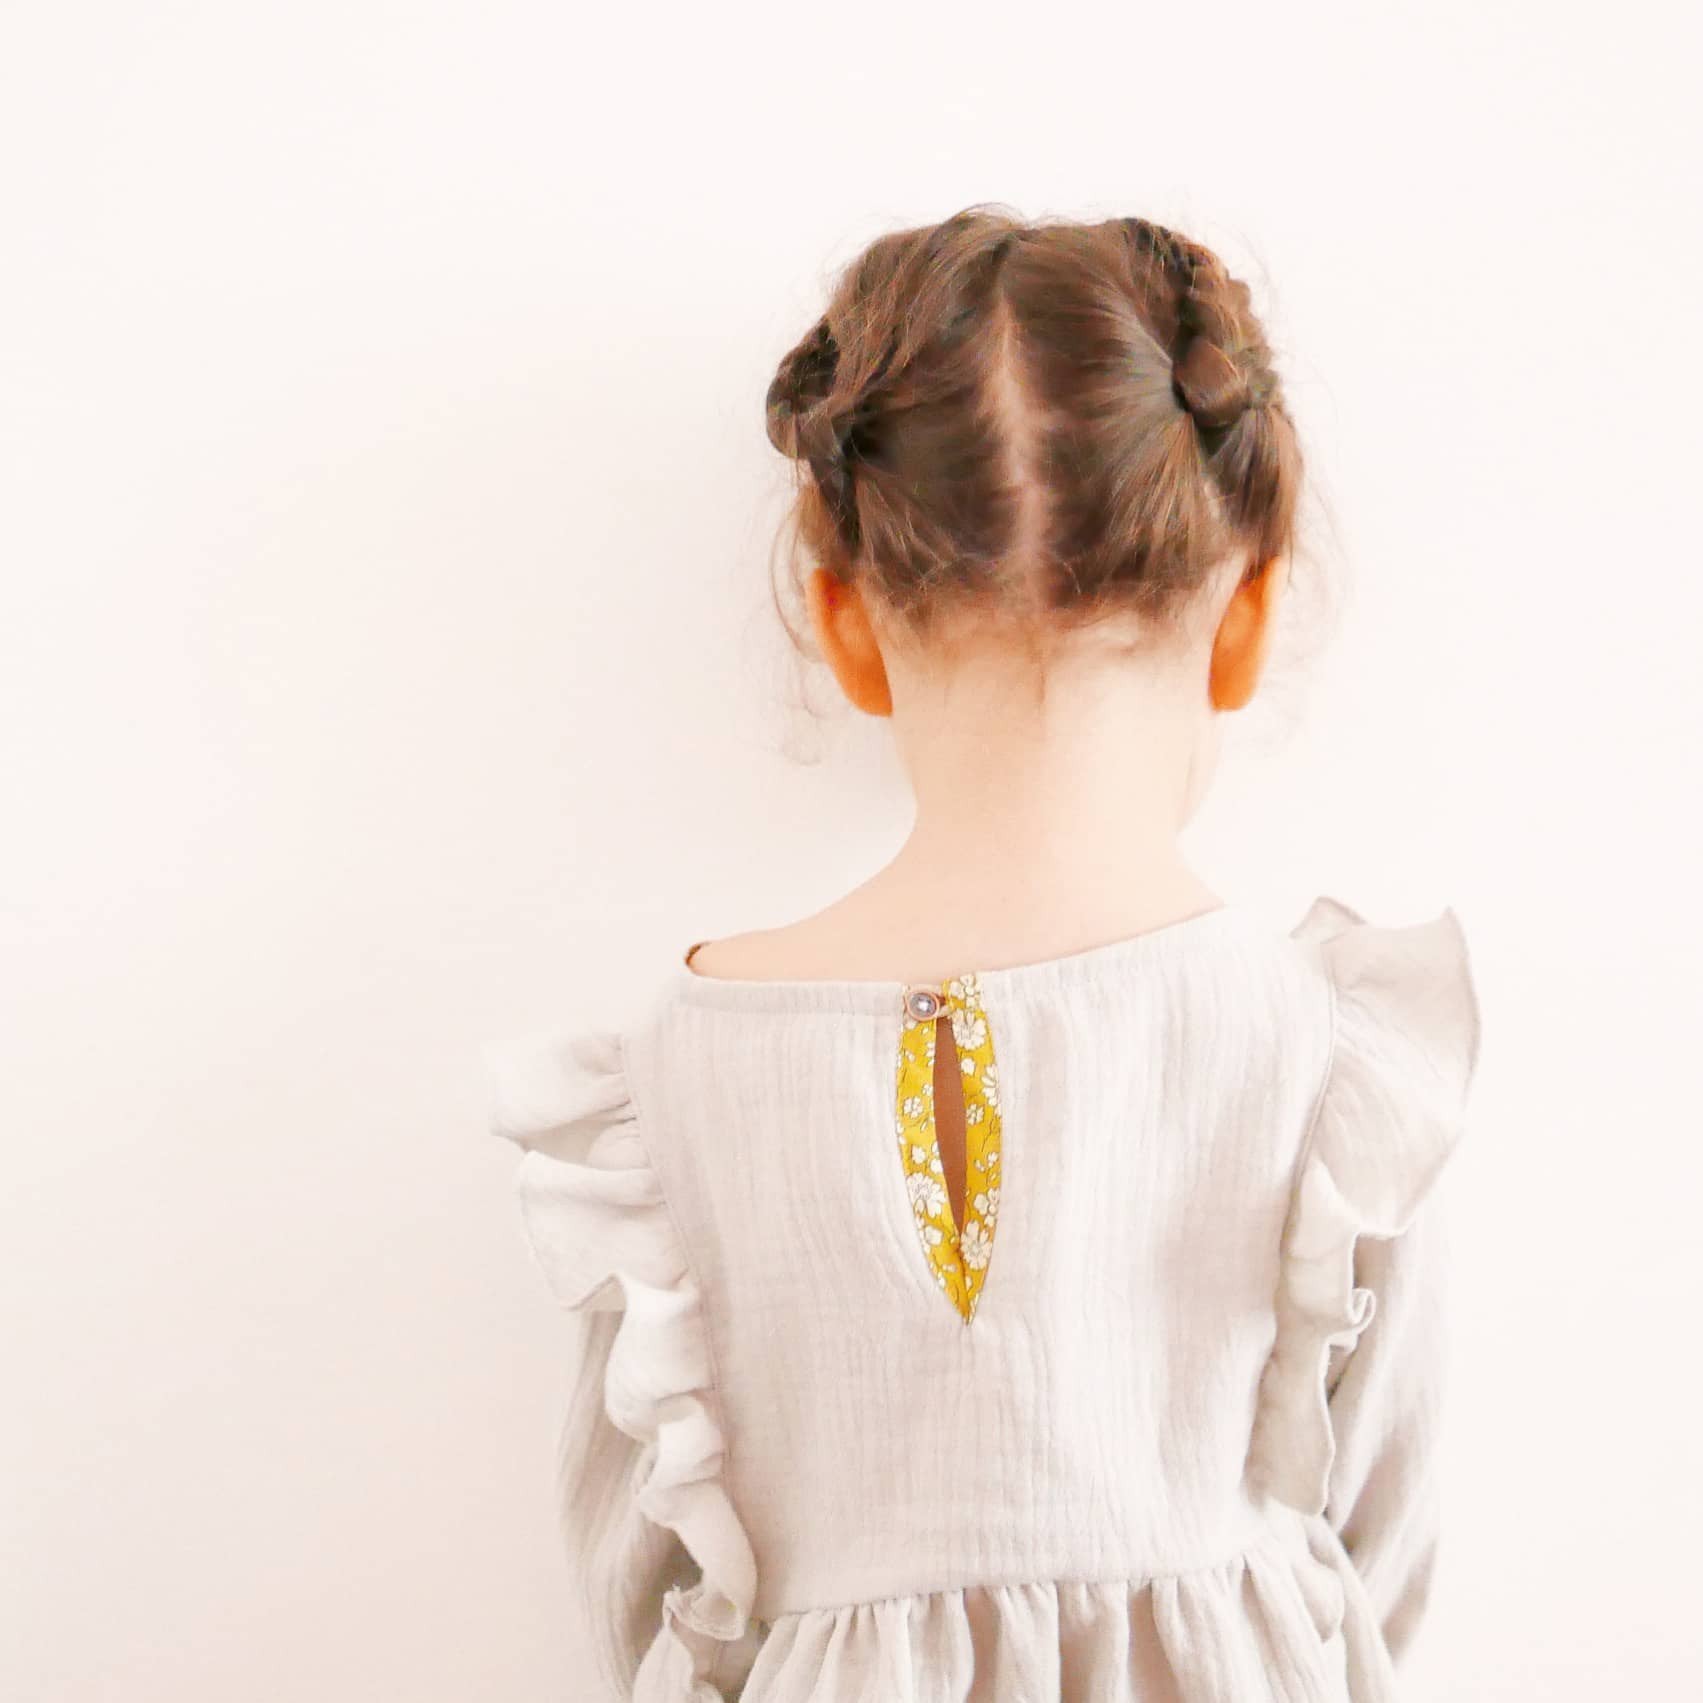 Ikatee - STELLA Duo Blouse & Dress - Girl 3/12 - Paper Sewing Pattern